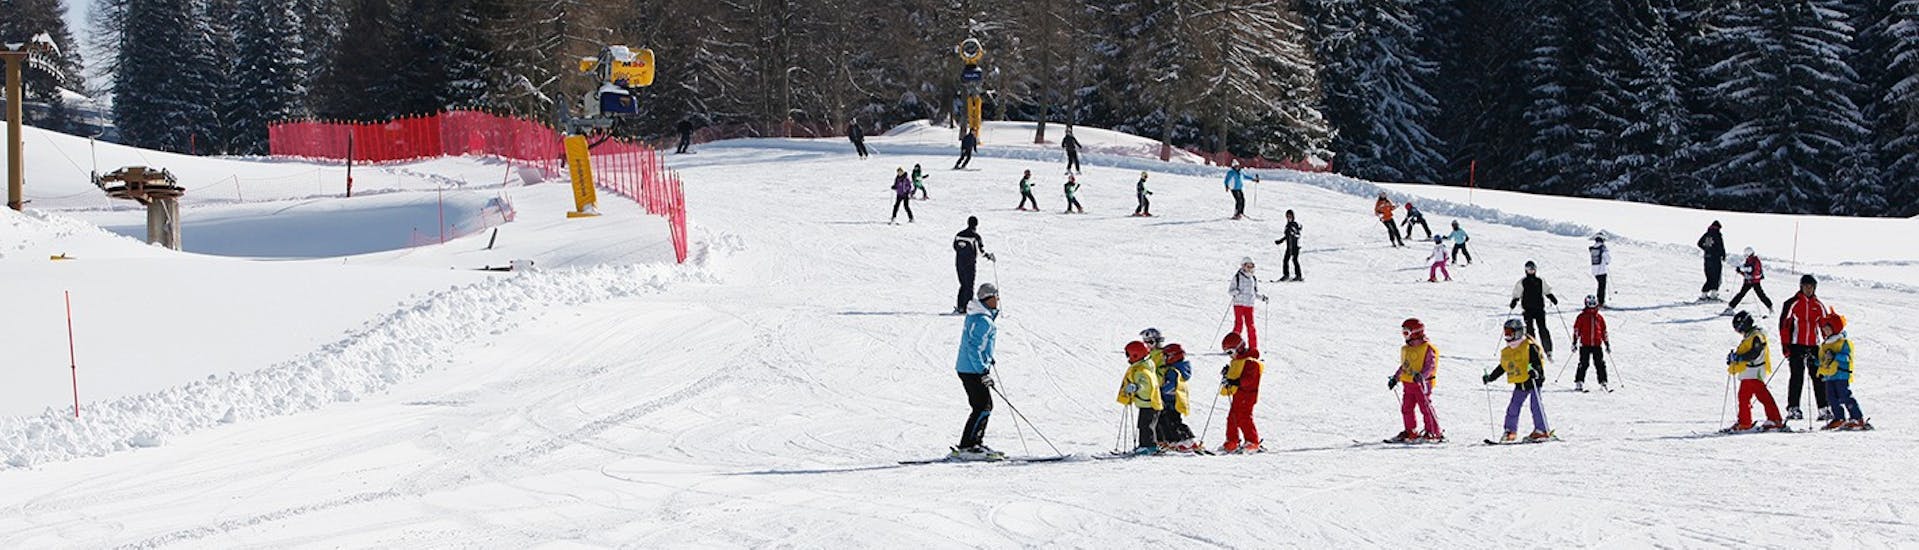 Skilessen voor kinderen (6-14 jaar) voor alle niveaus - halve dag.